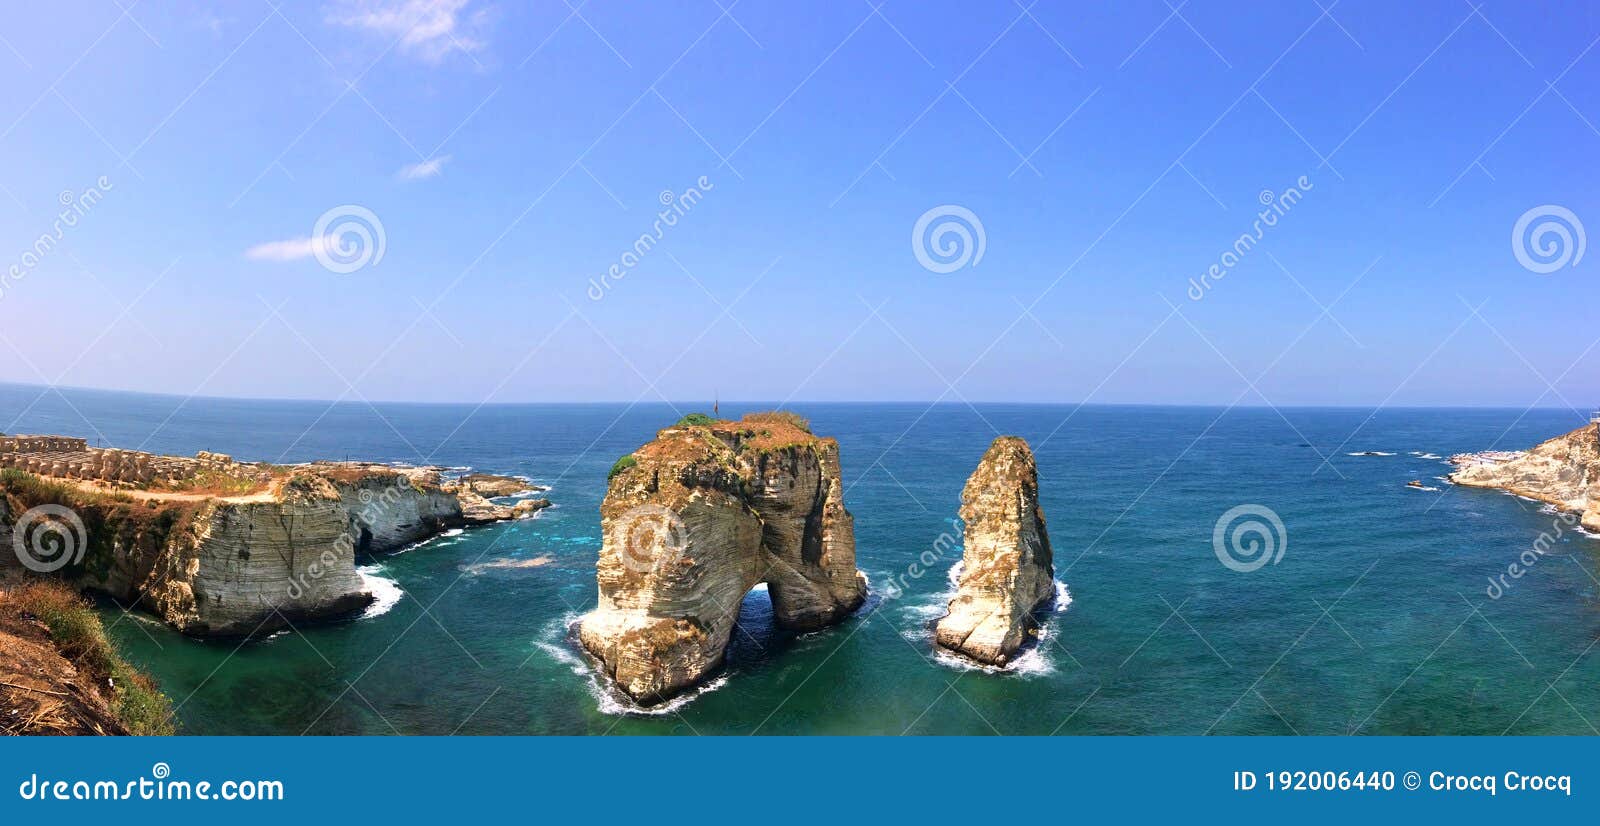 【黎巴嫩贝鲁特摄影图片】风光摄影_太平洋电脑网摄影部落